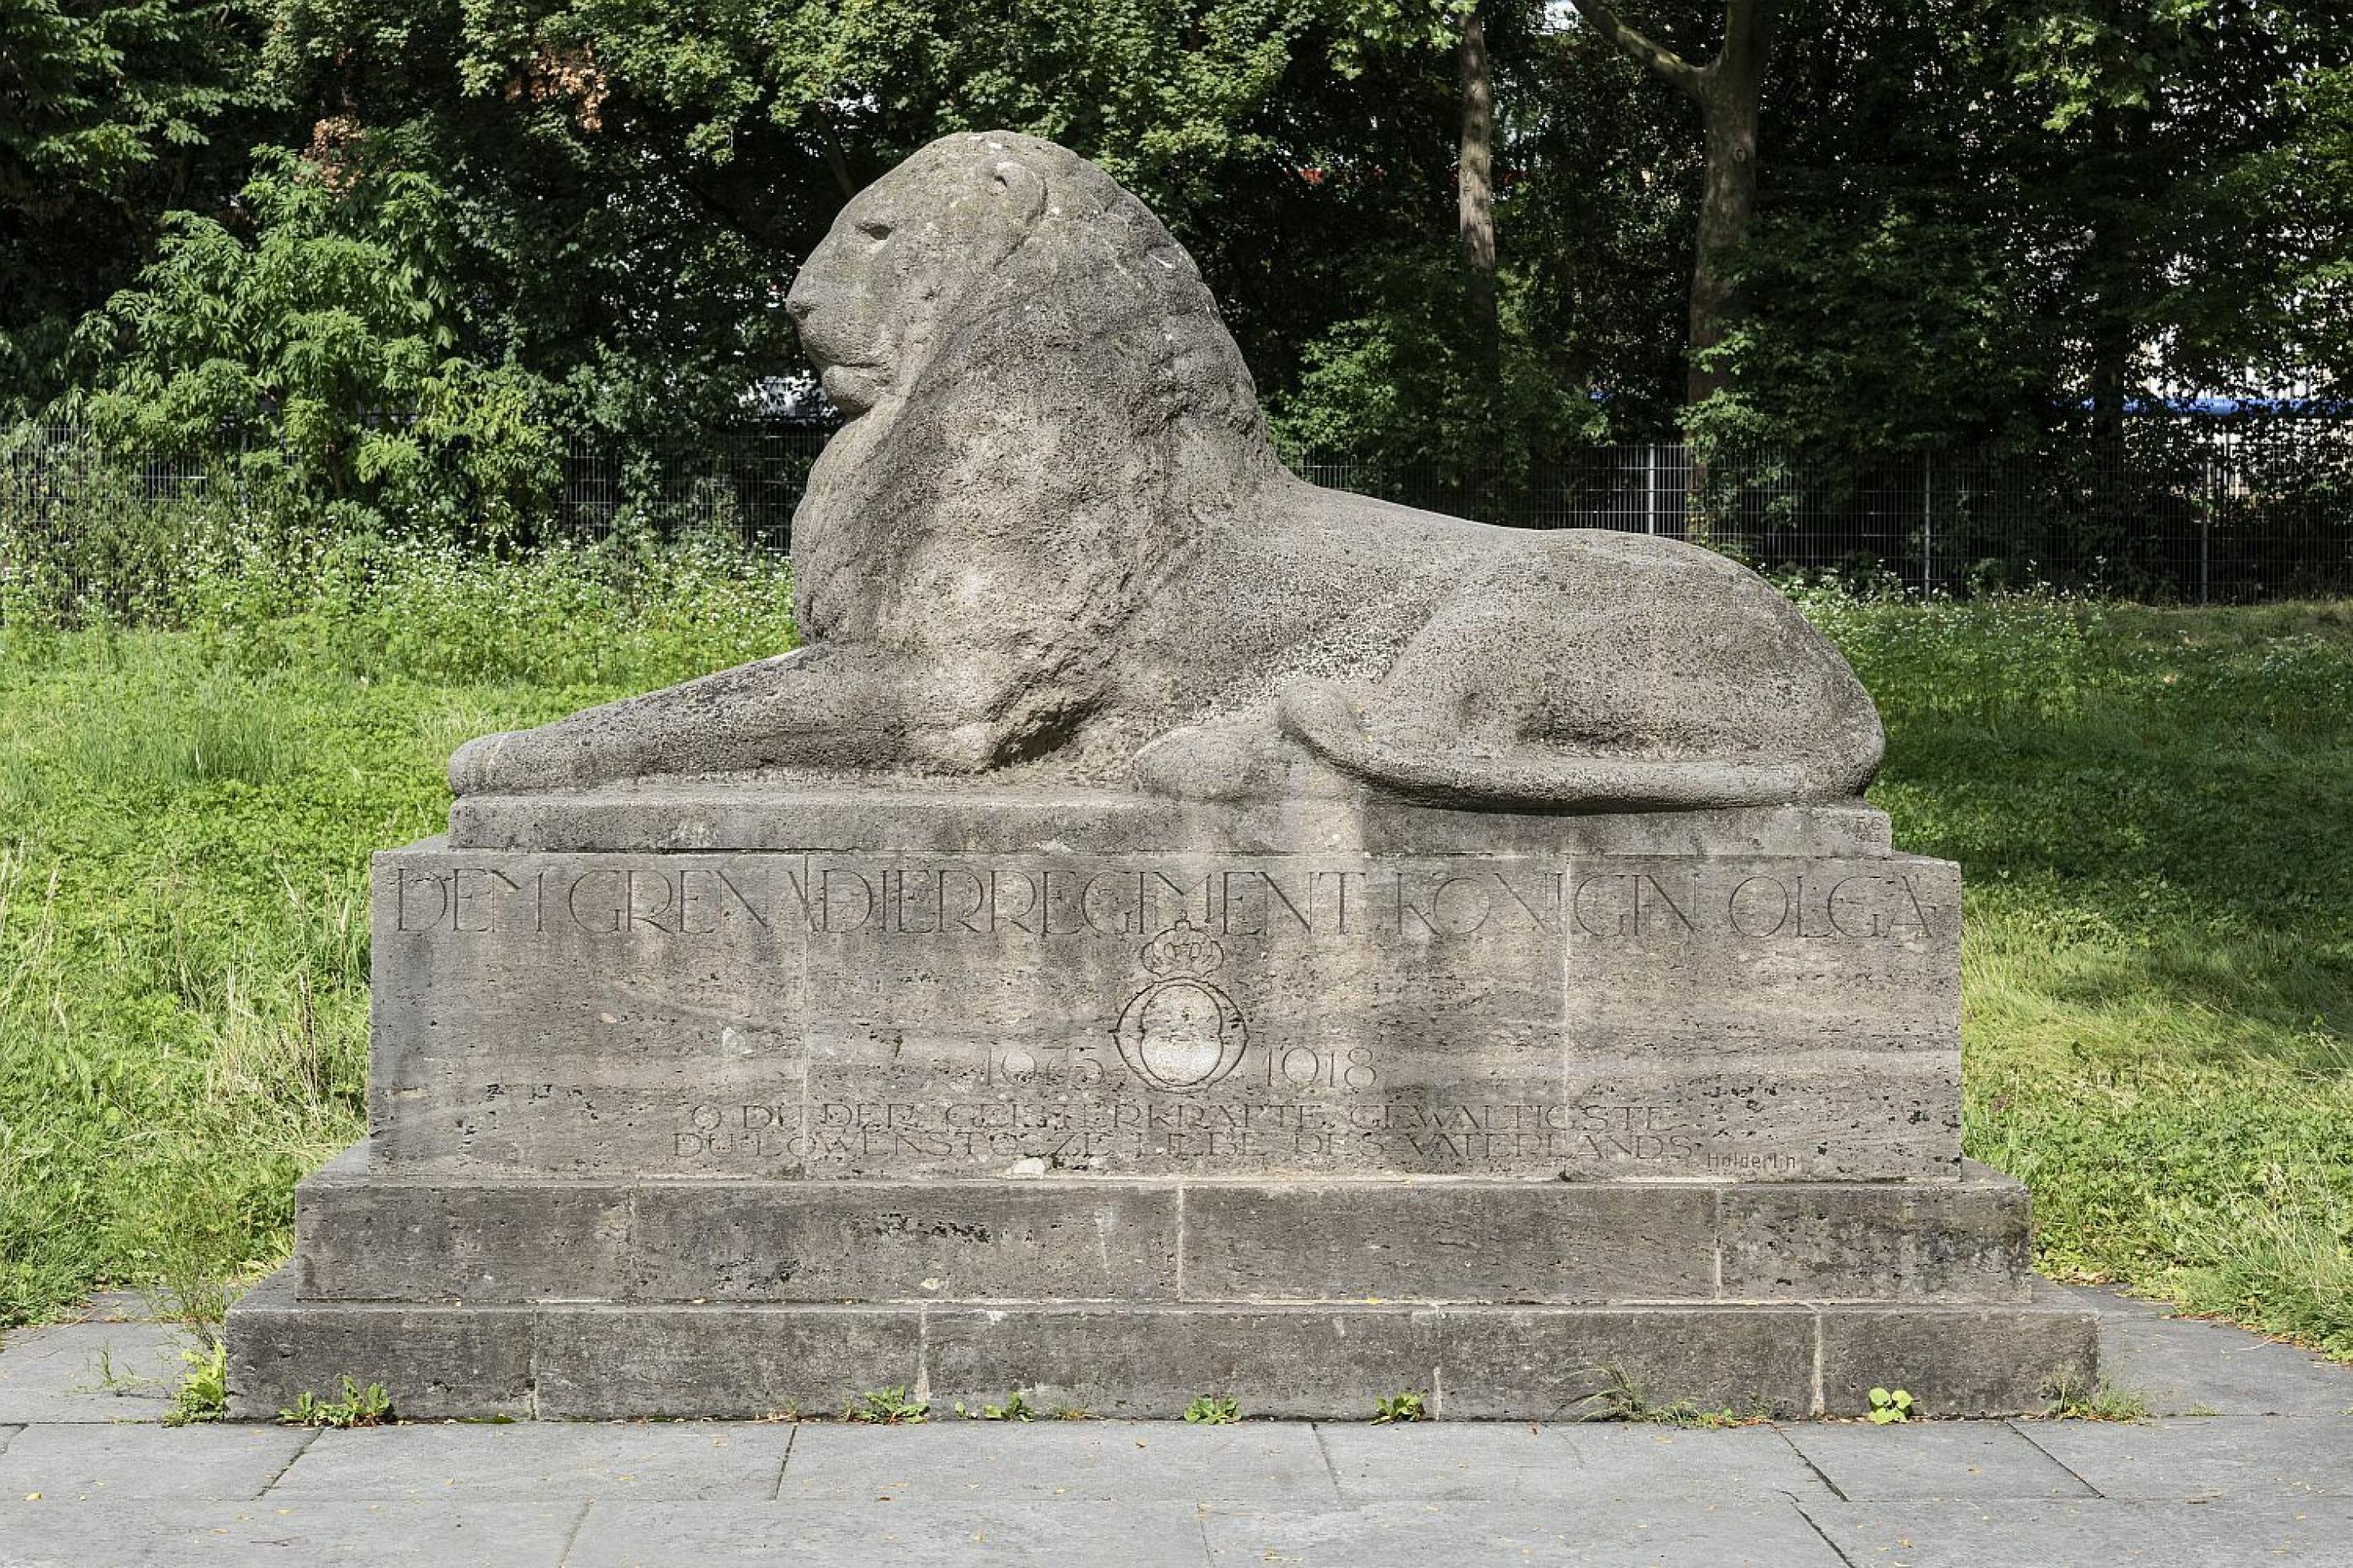 Skulptur eines liegenden, männlichen Löwen. Die Inschrift auf dem Sockel erinnert an das Grenadier-Regiment Königin Olga.